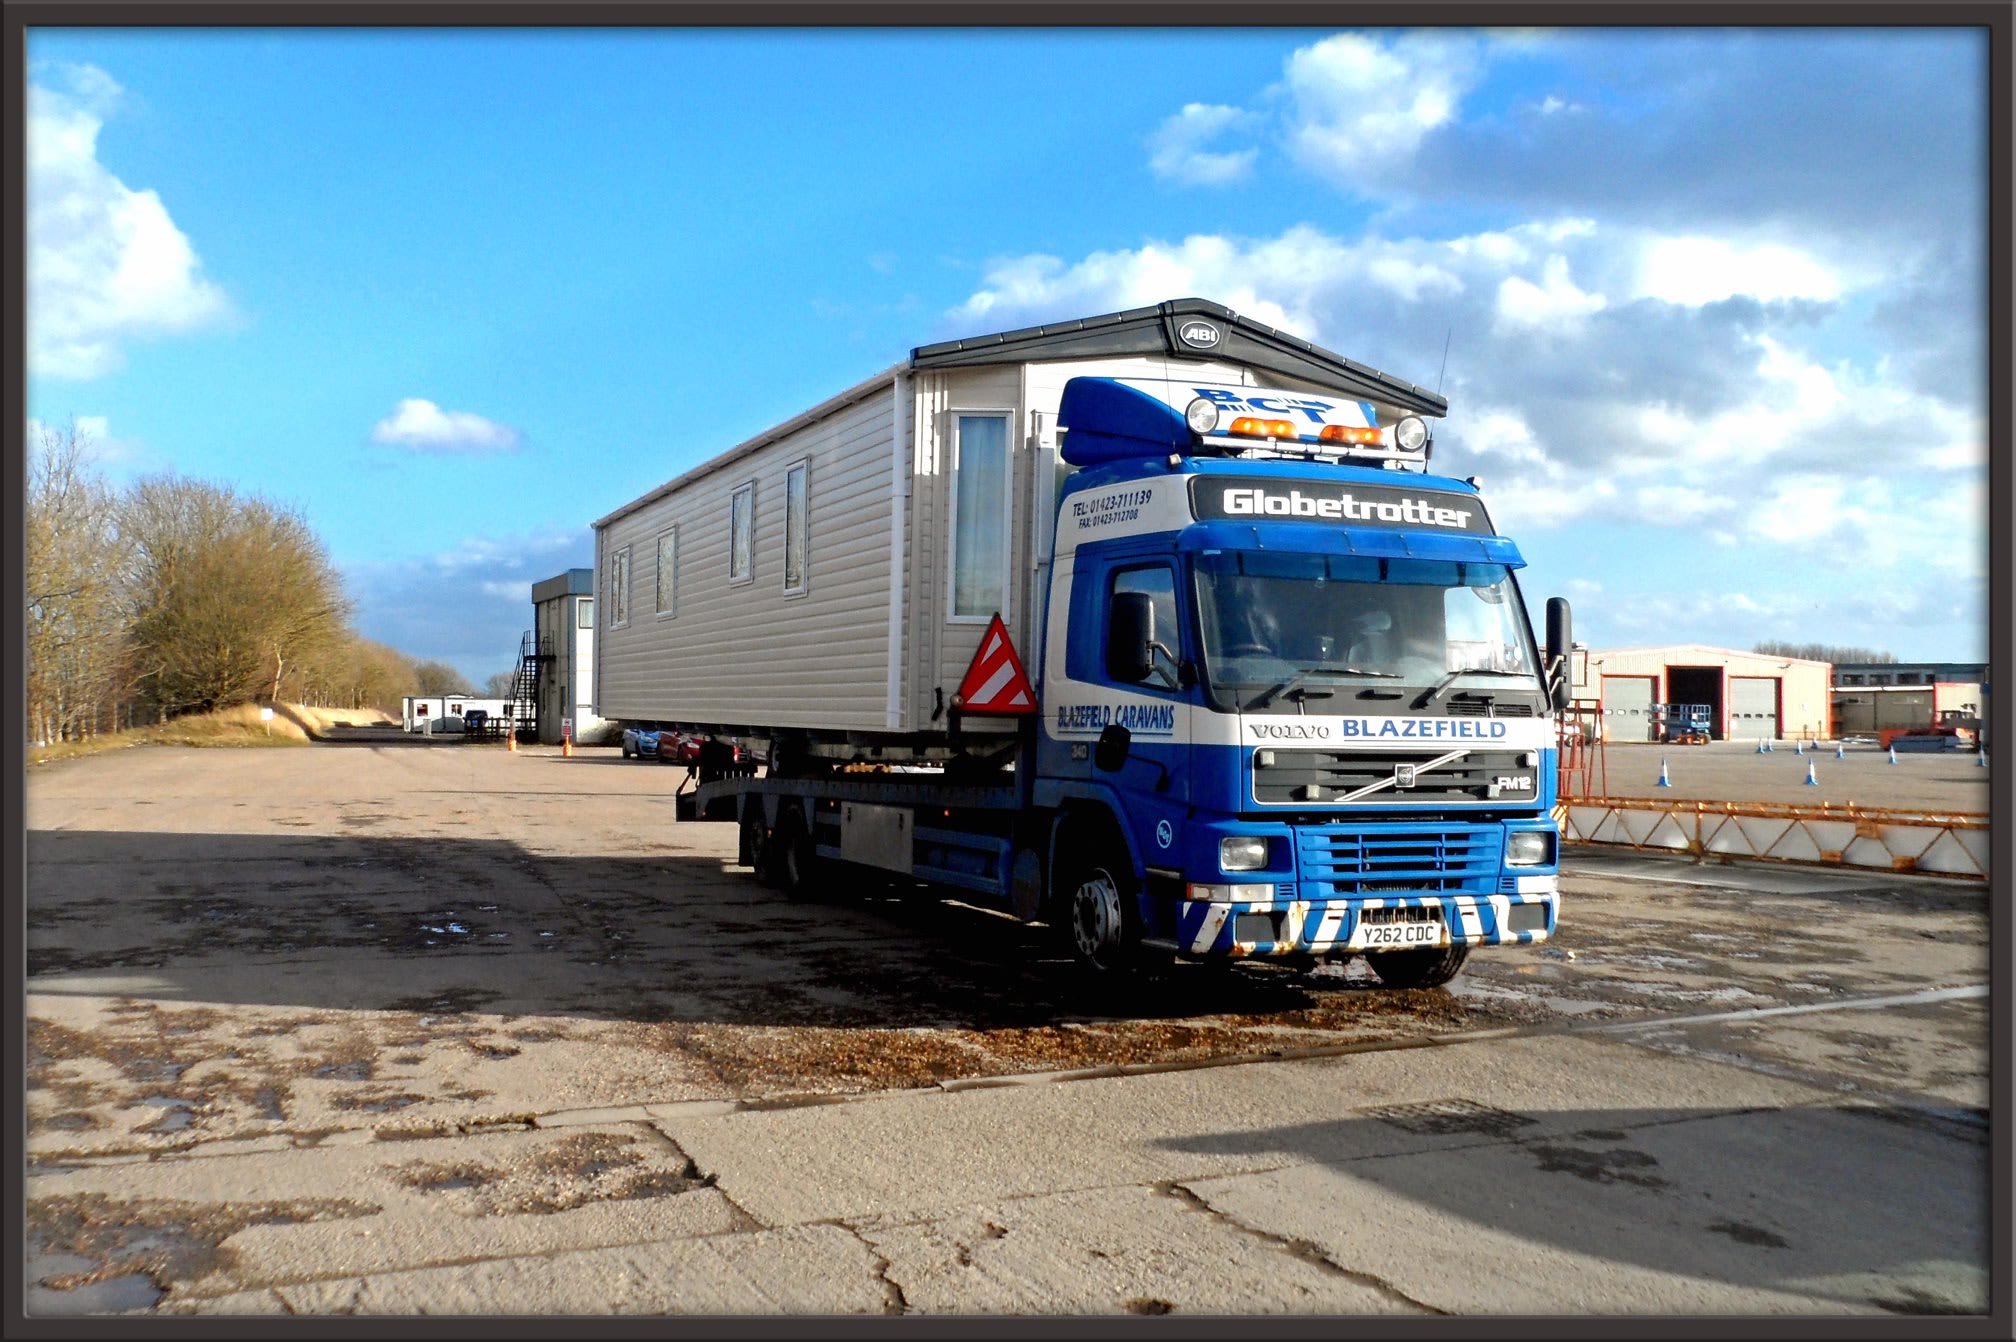 Blazefield Caravans Ltd Harrogate 01423 711139